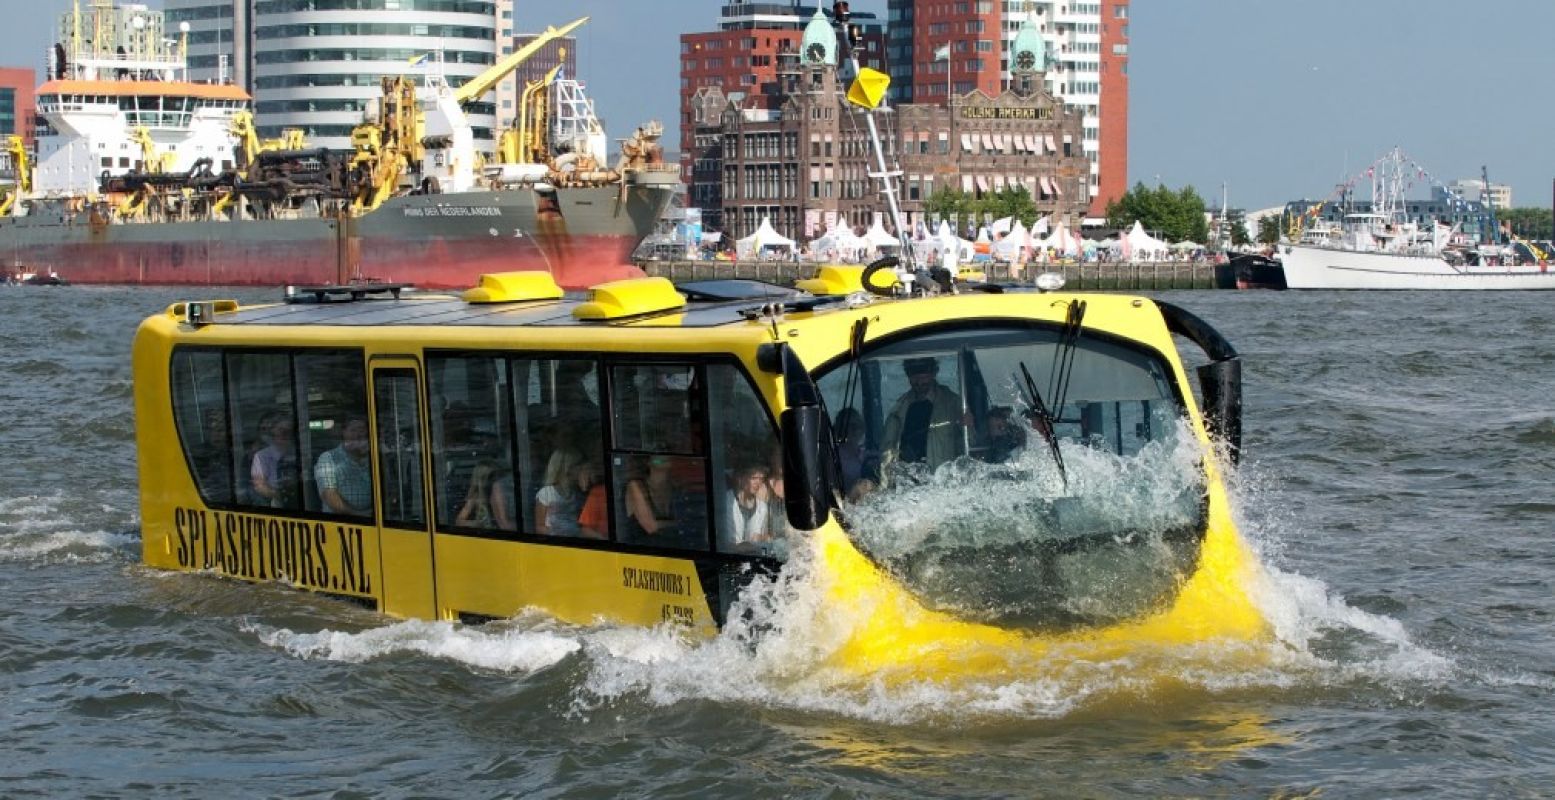 Duik met bus en al de Maas in en bewonder de mooiste hotspots van Rotterdam. Foto: Splashtours Rotterdam.